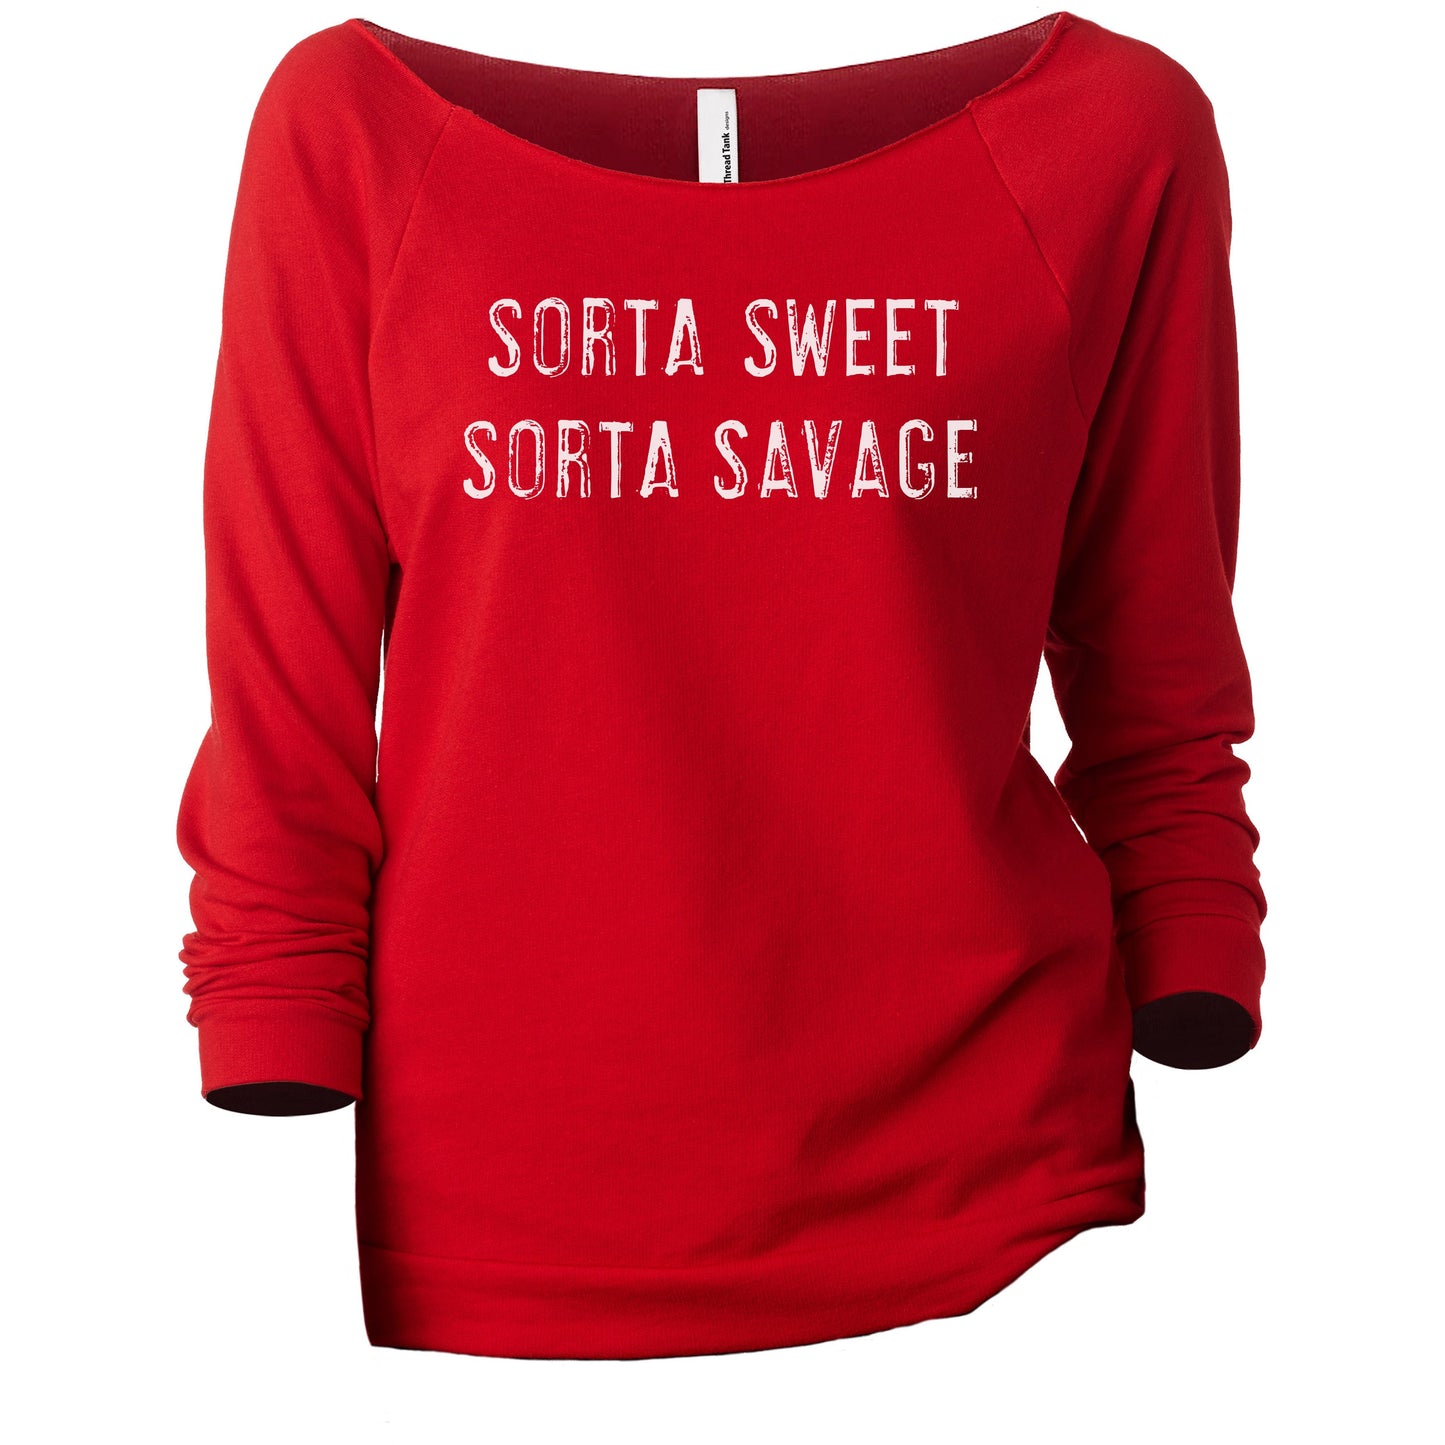 Sorta Sweet Sorta Savage Women's Graphic Printed Lightweight Slouchy 3/4 Sleeves Sweatshirt Red